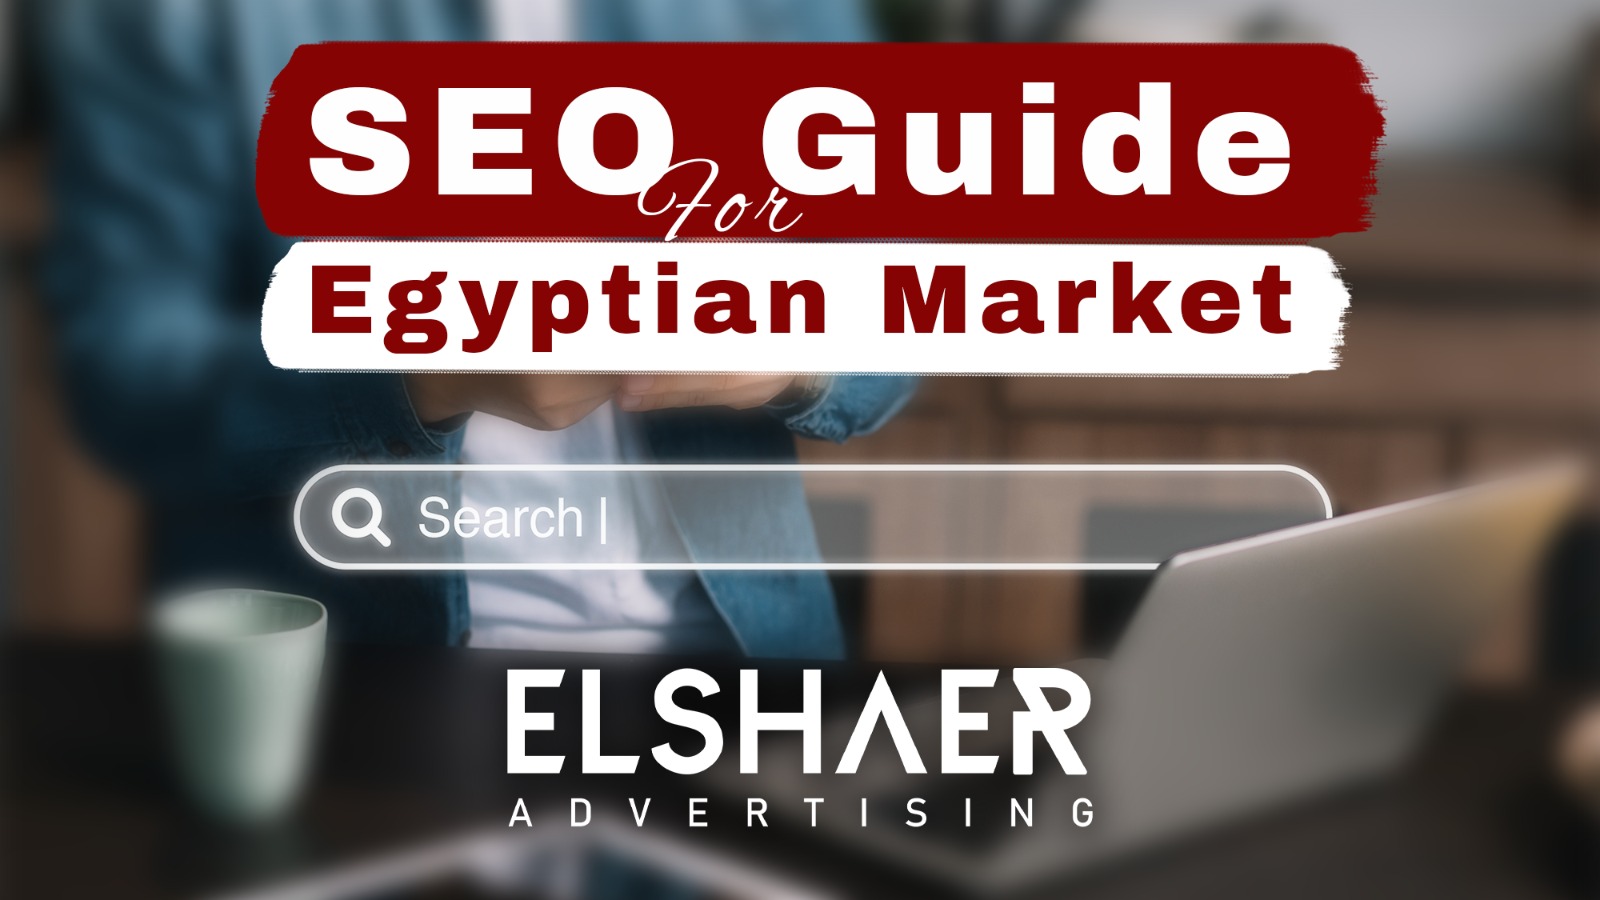 seo guide for Egyptian market